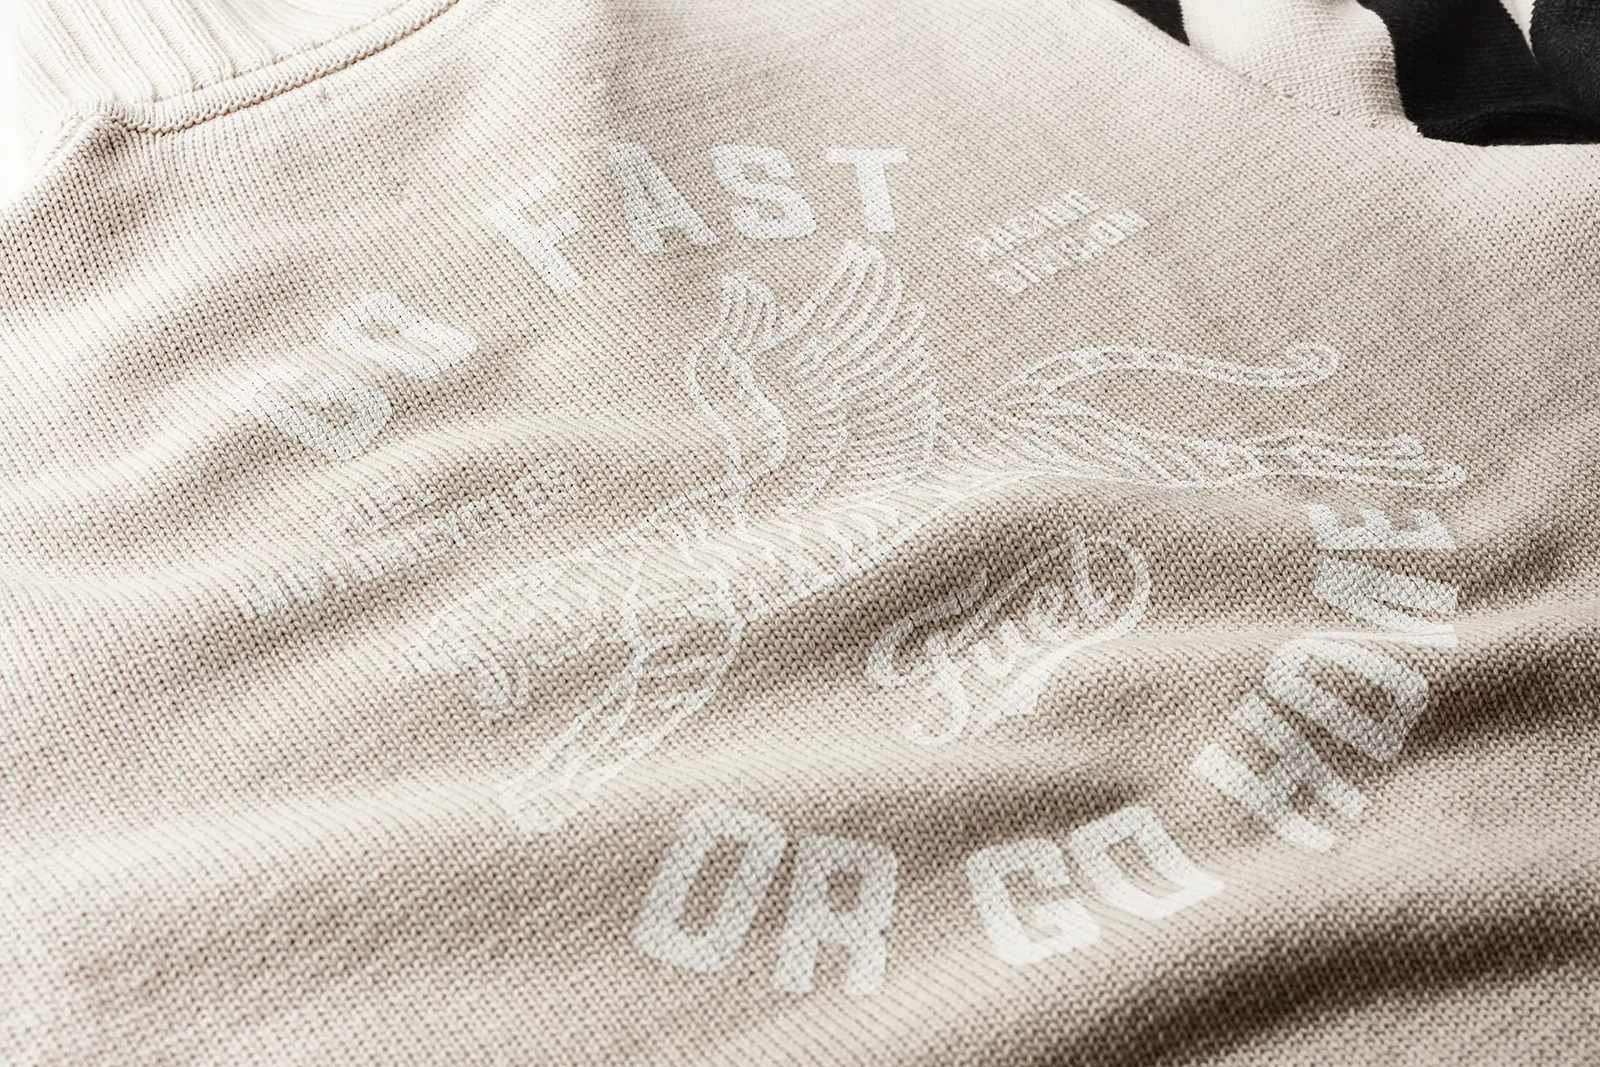 racing-division-sweater-detail_1800x1800.webp